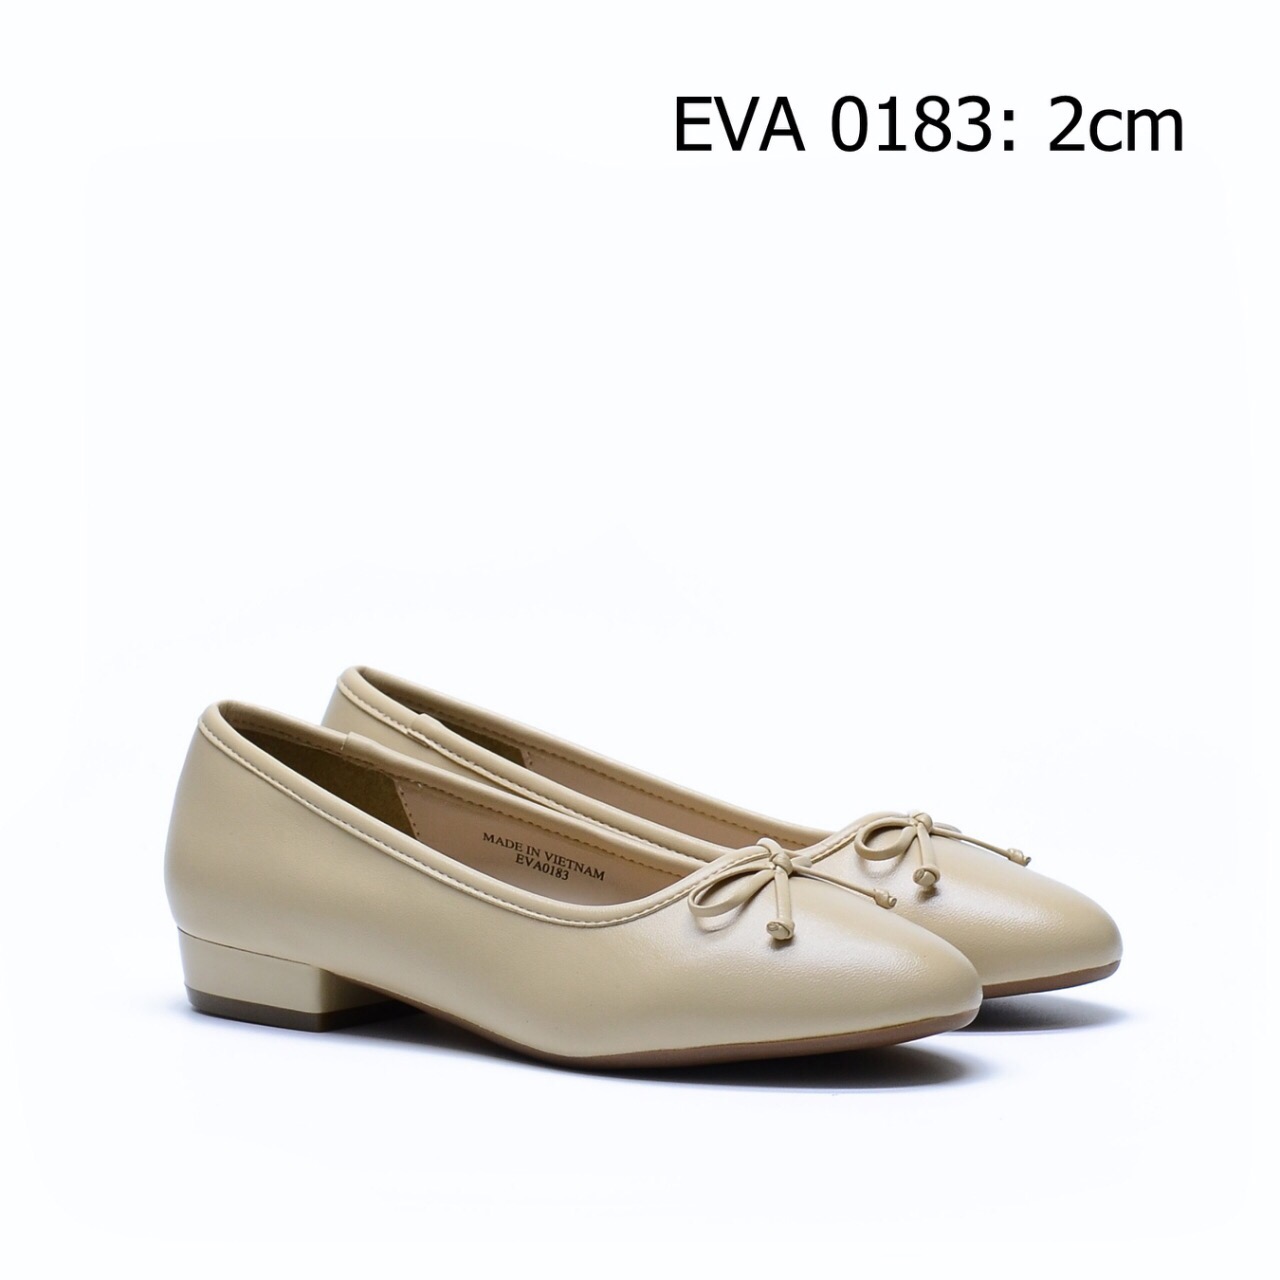 Giày bệt nữ tính EVA0183 thiết kế nơ nhỏ xinh